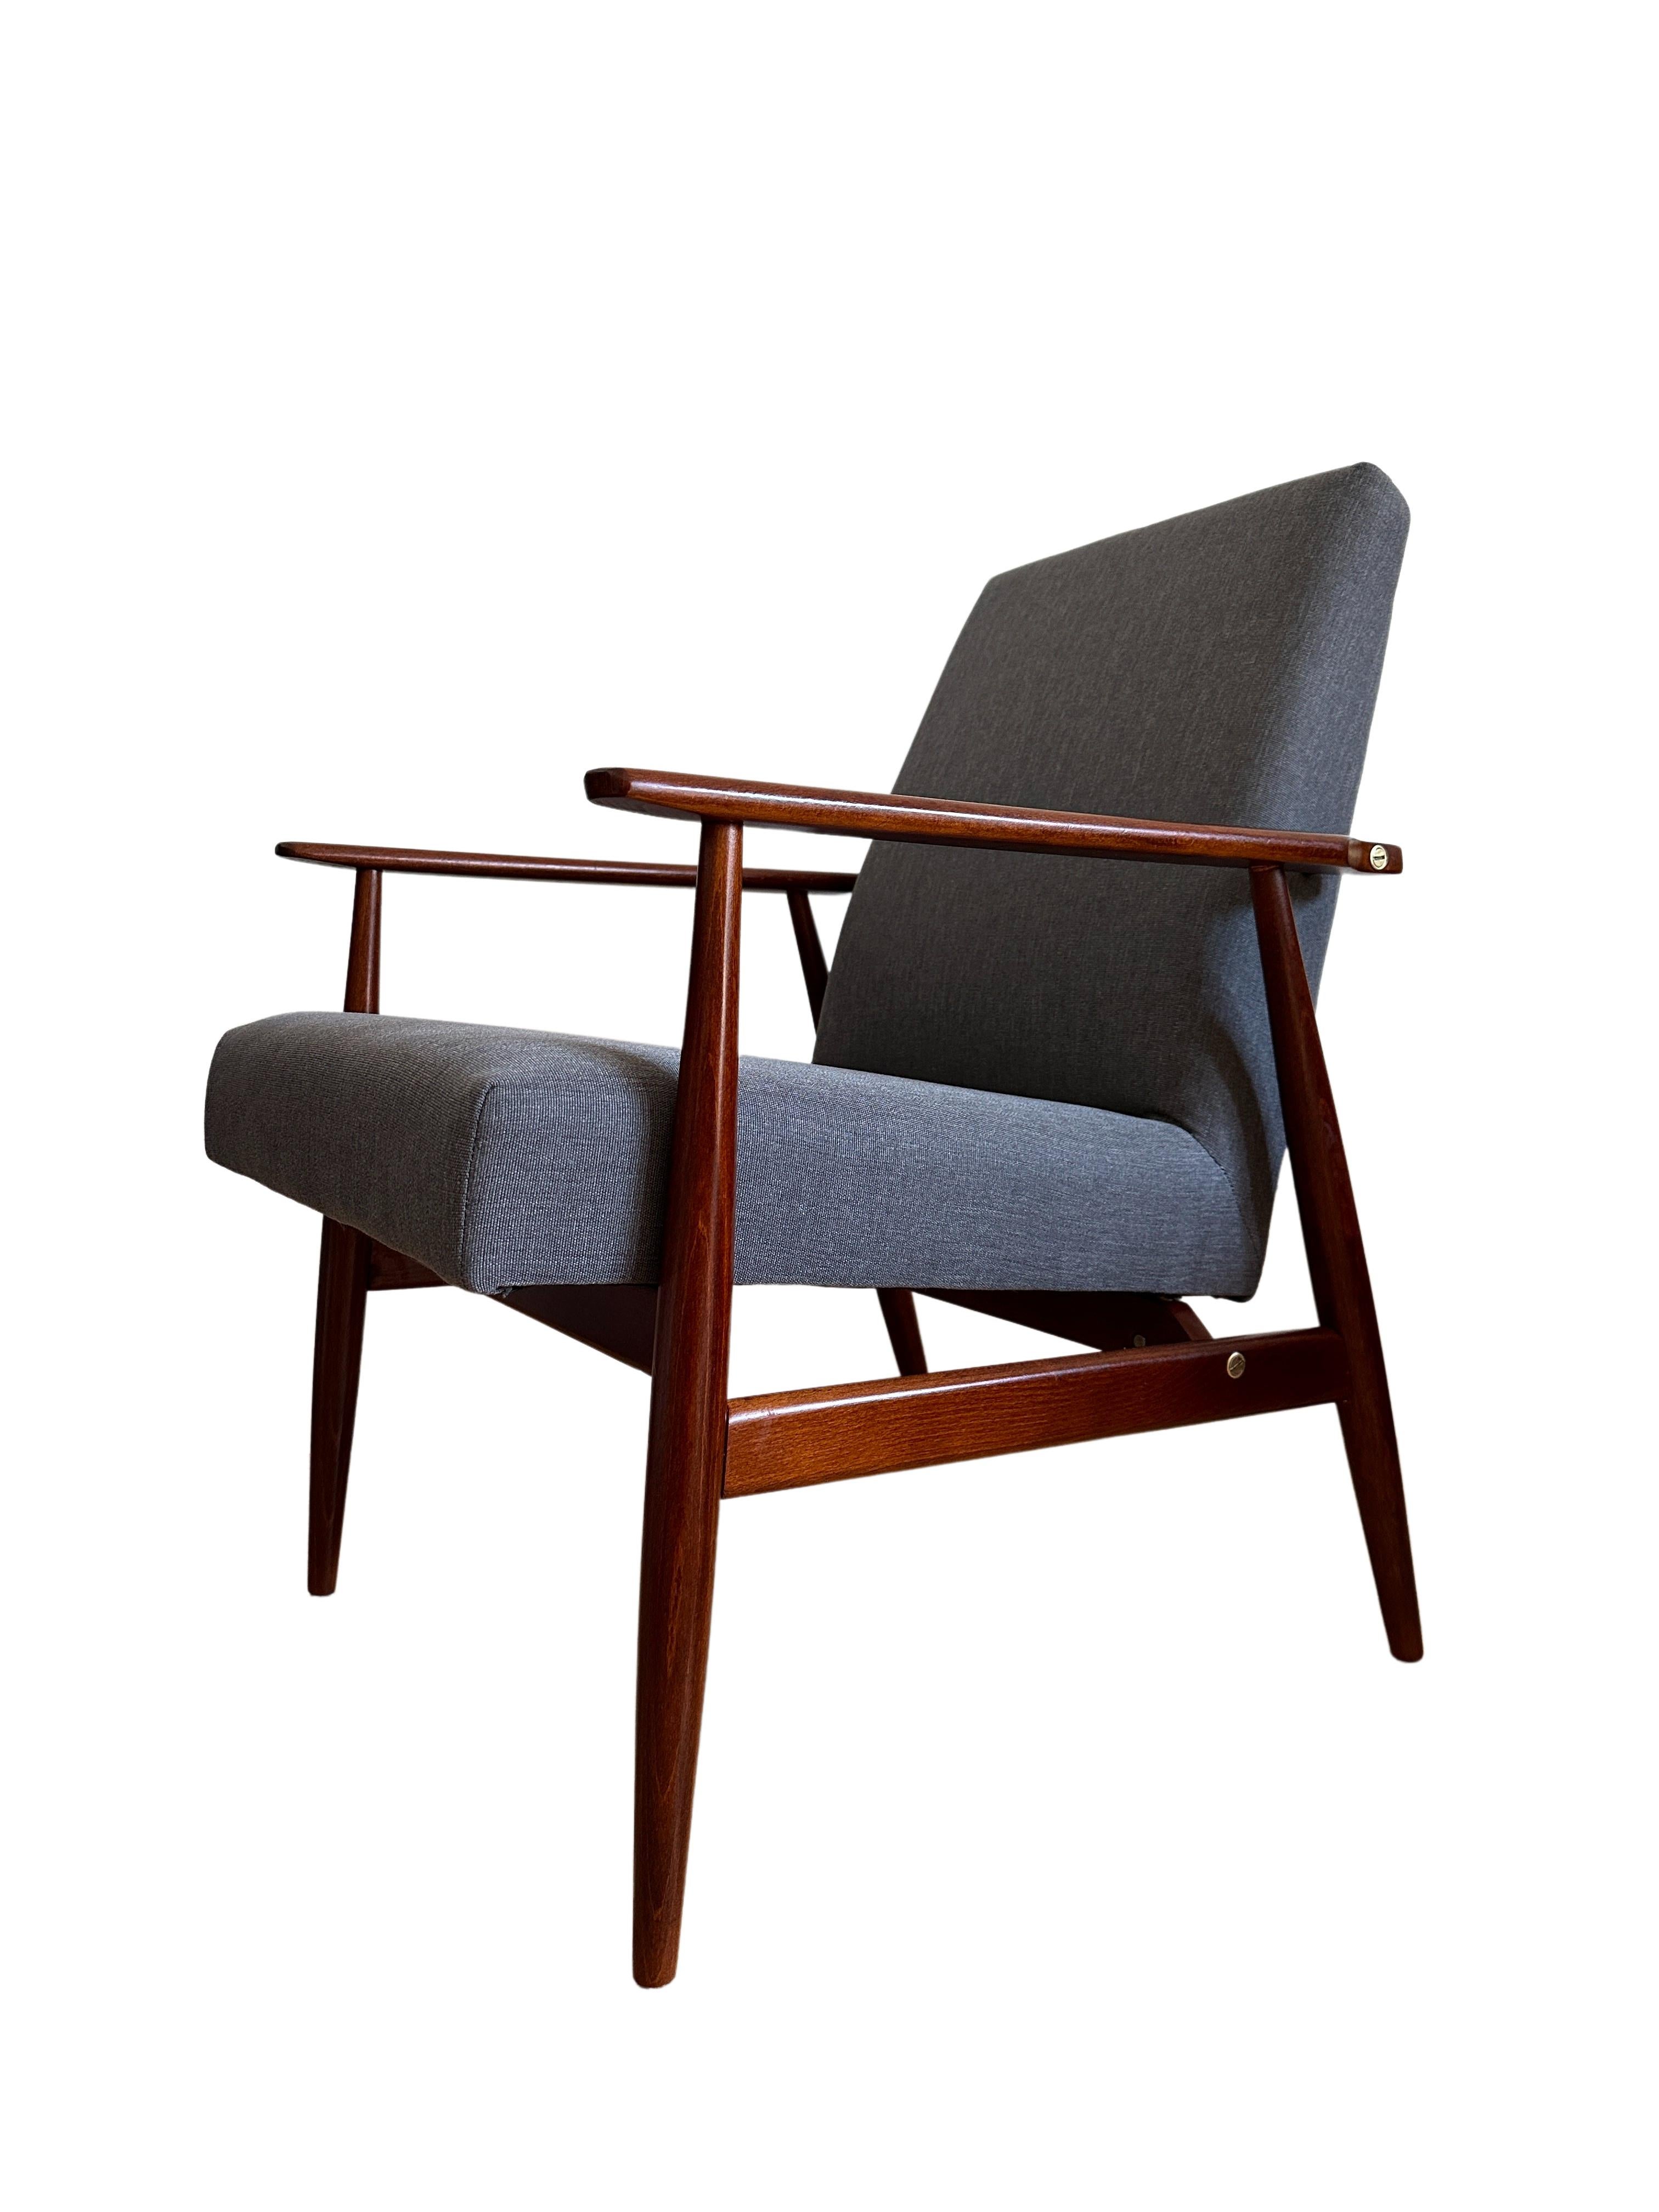 Das Set aus zwei Sesseln wurde von Henryk Lis in den 1960er Jahren entworfen. 

Die Struktur besteht aus Buchenholz in einer warmen Farbe, die mit einem halbmatten, satinierten Lack überzogen ist. Der Bezug ist ein schwerer, hochwertiger dänischer